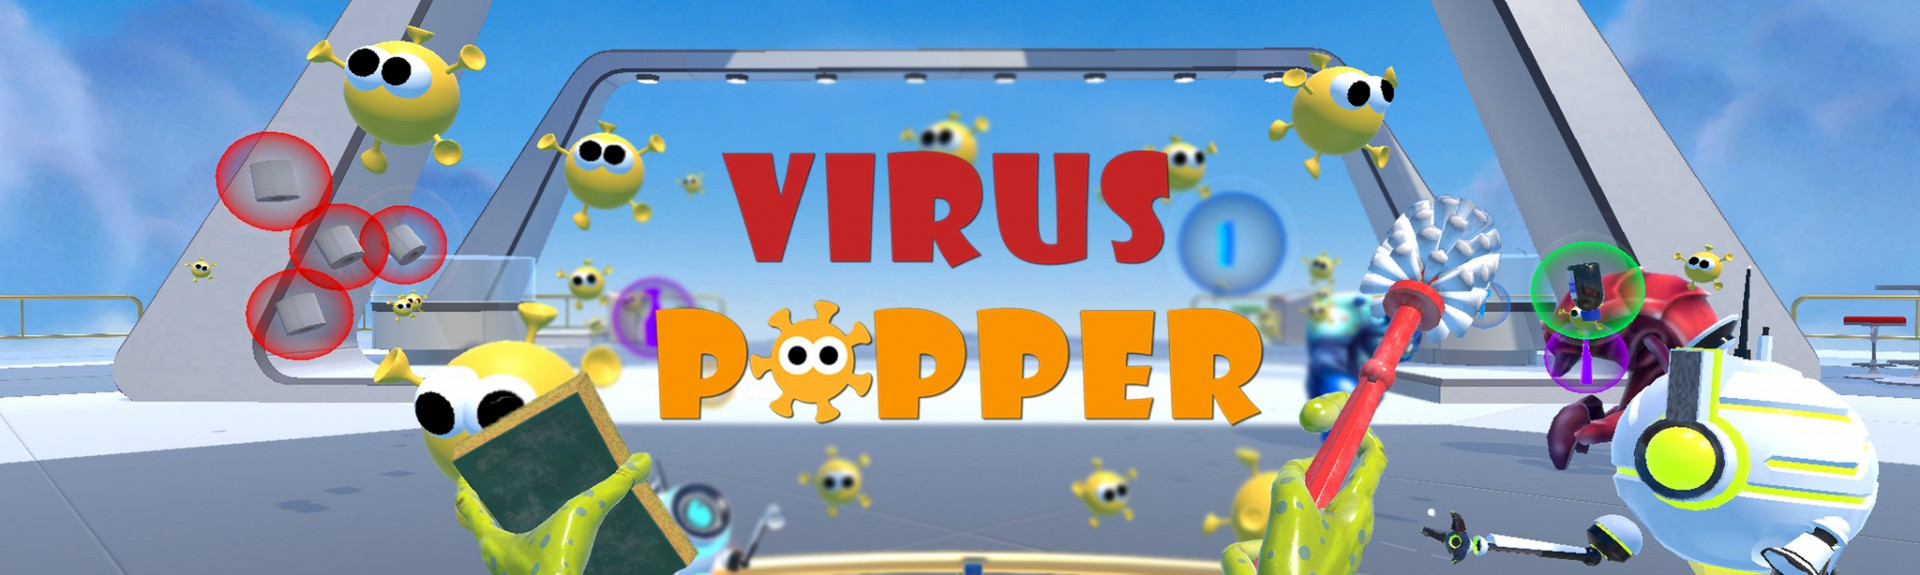 Virus Popper